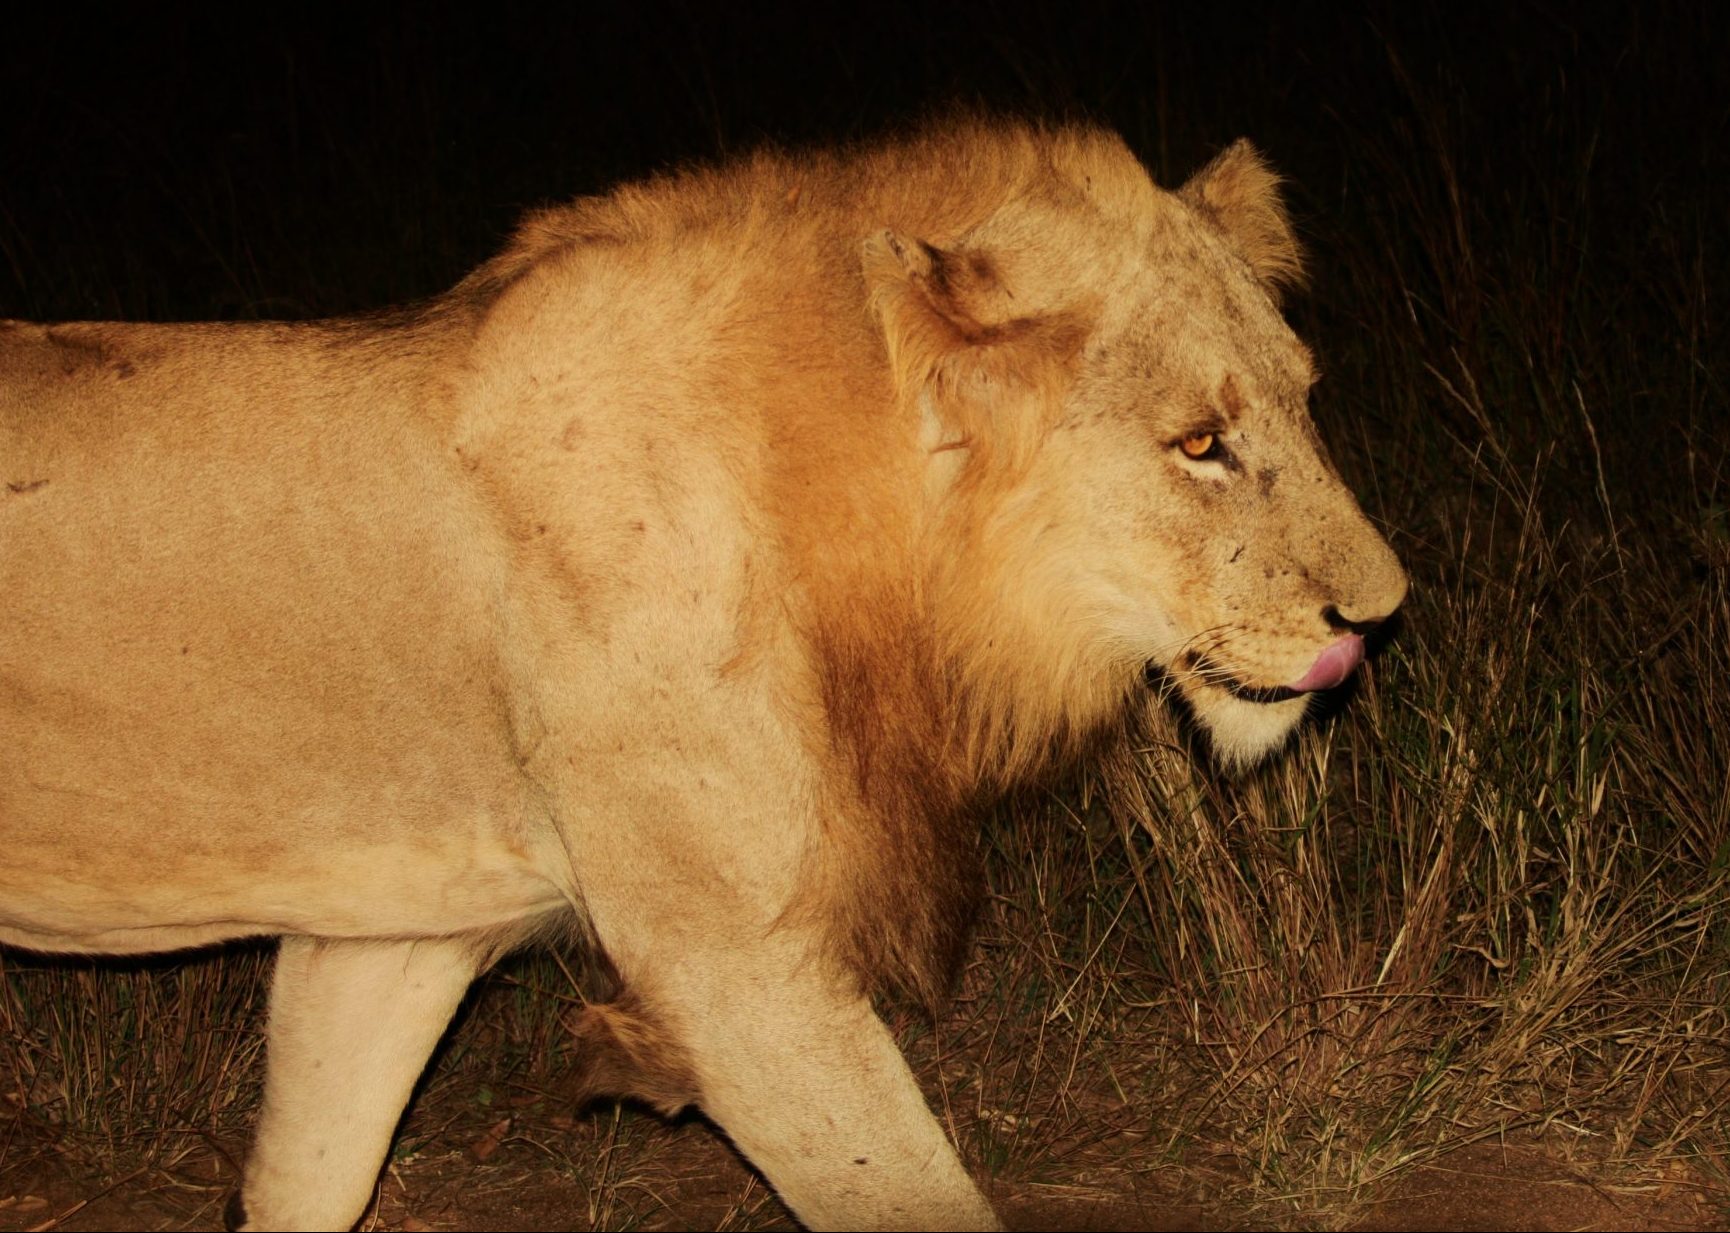 Lion on Kruger road at night, David Manttan